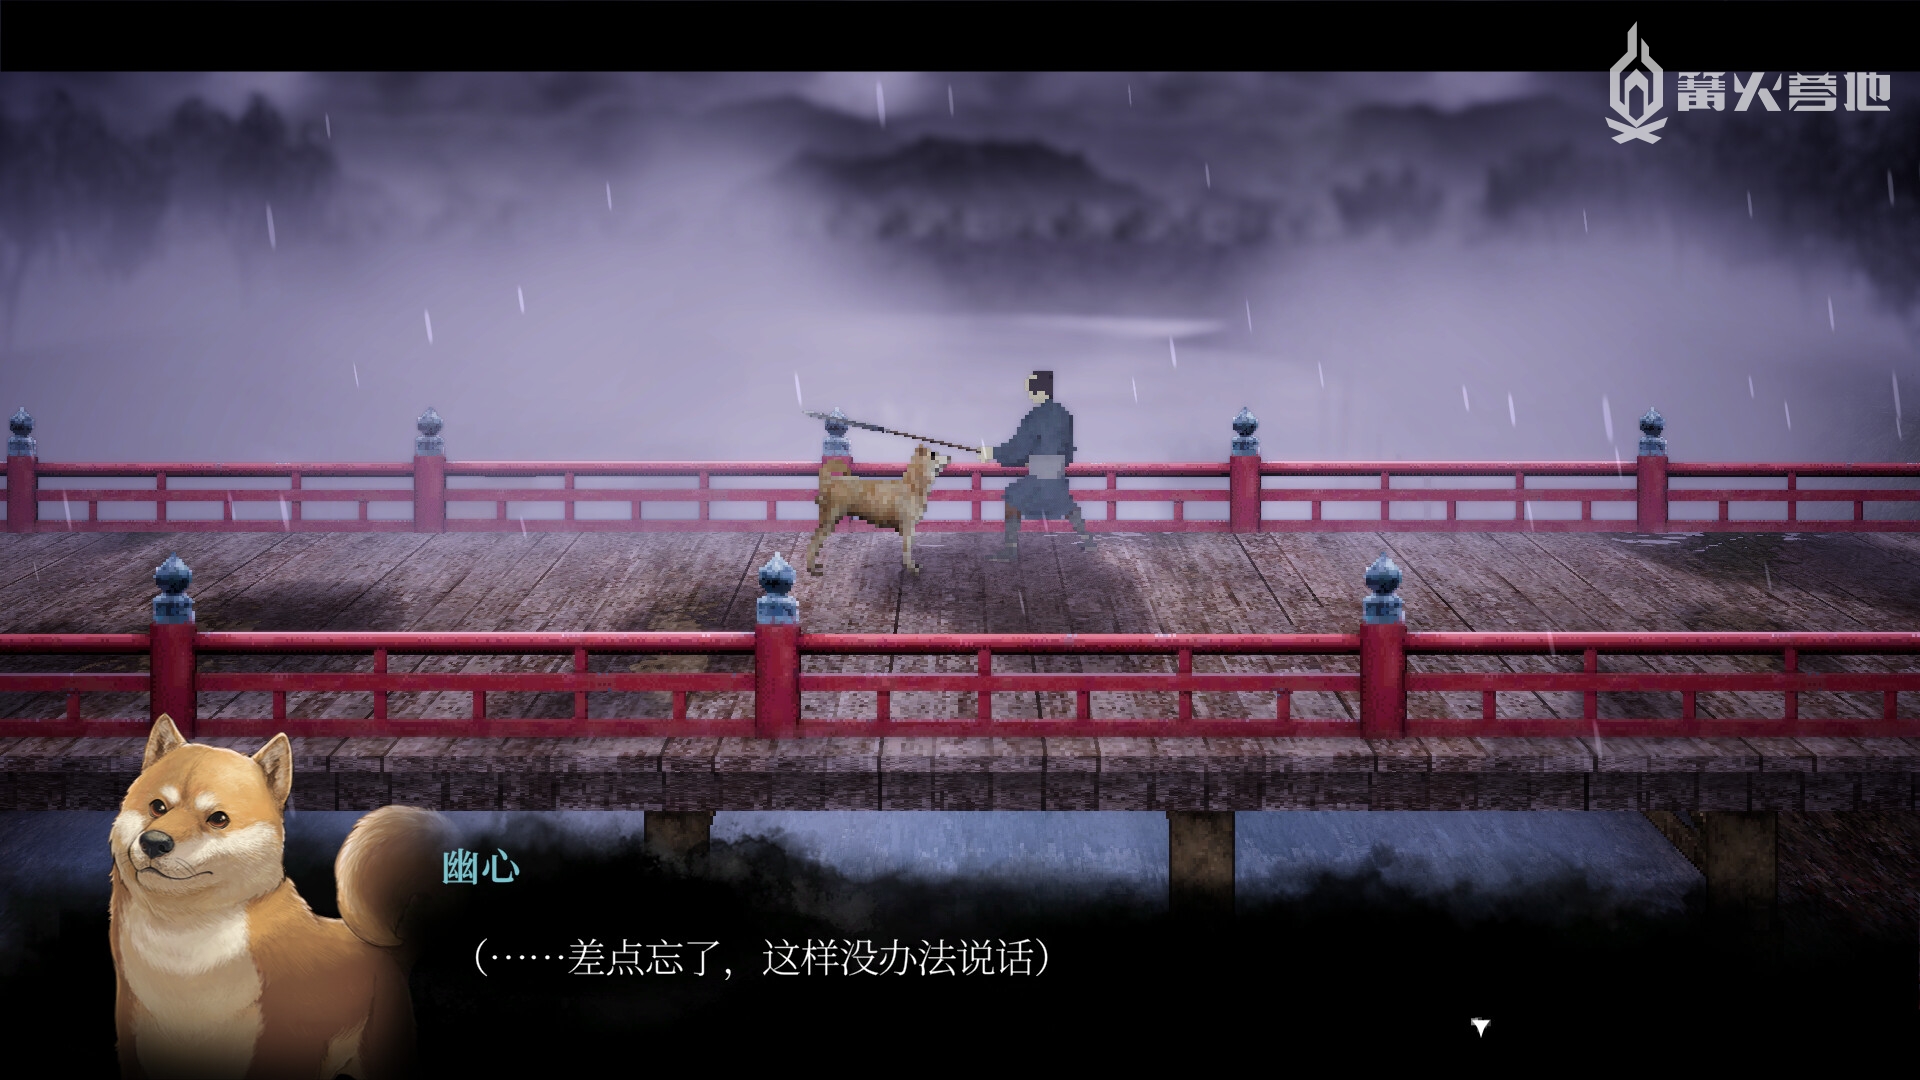 和风像素 2D 卷轴动作冒险游戏《雨魂》公布主视觉图